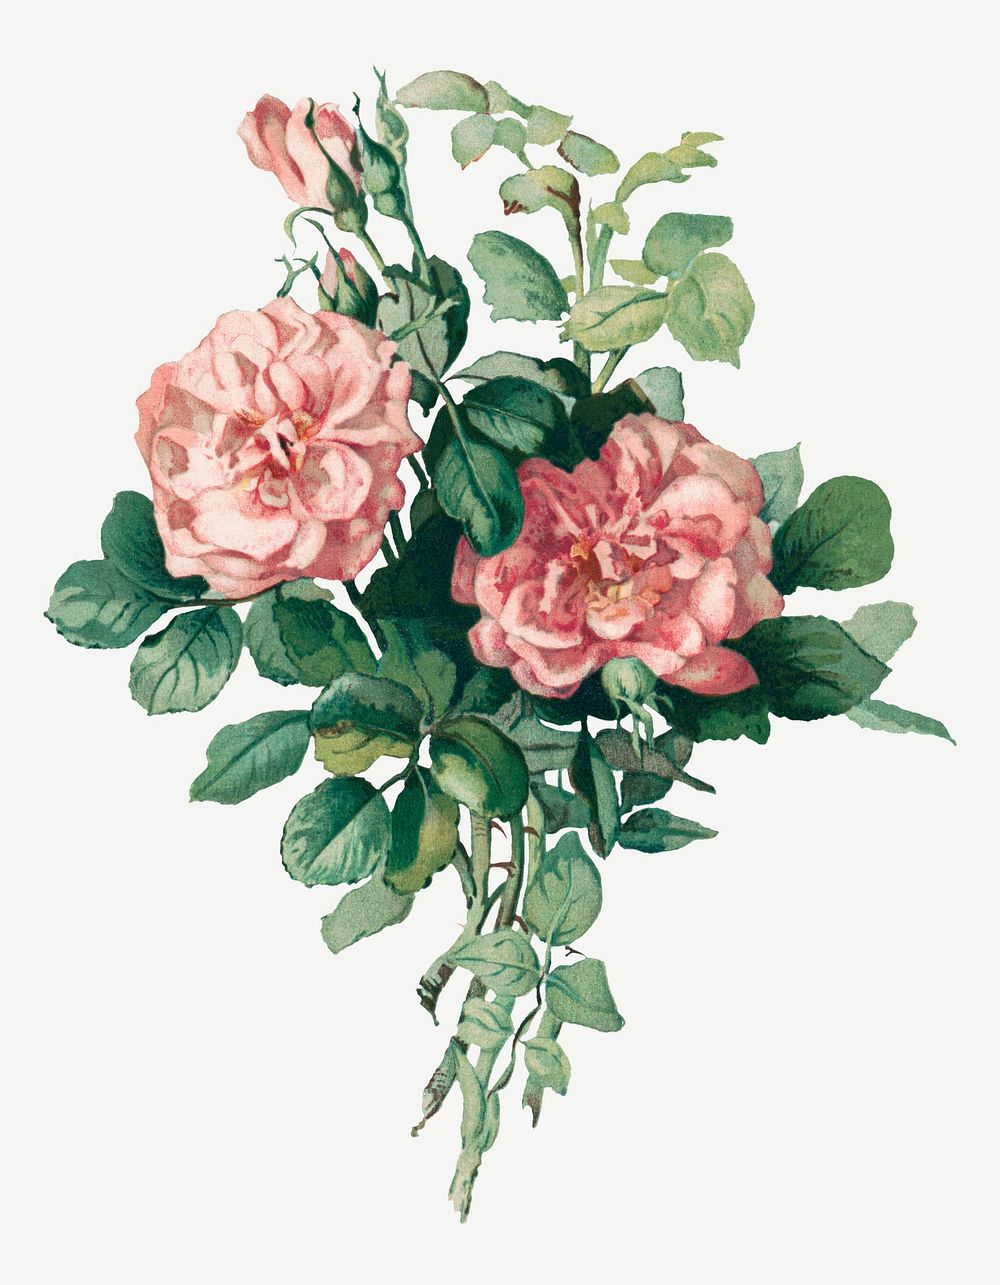 Vintage rose flower illustration psd, remix from artworks by L. Prang & Co.